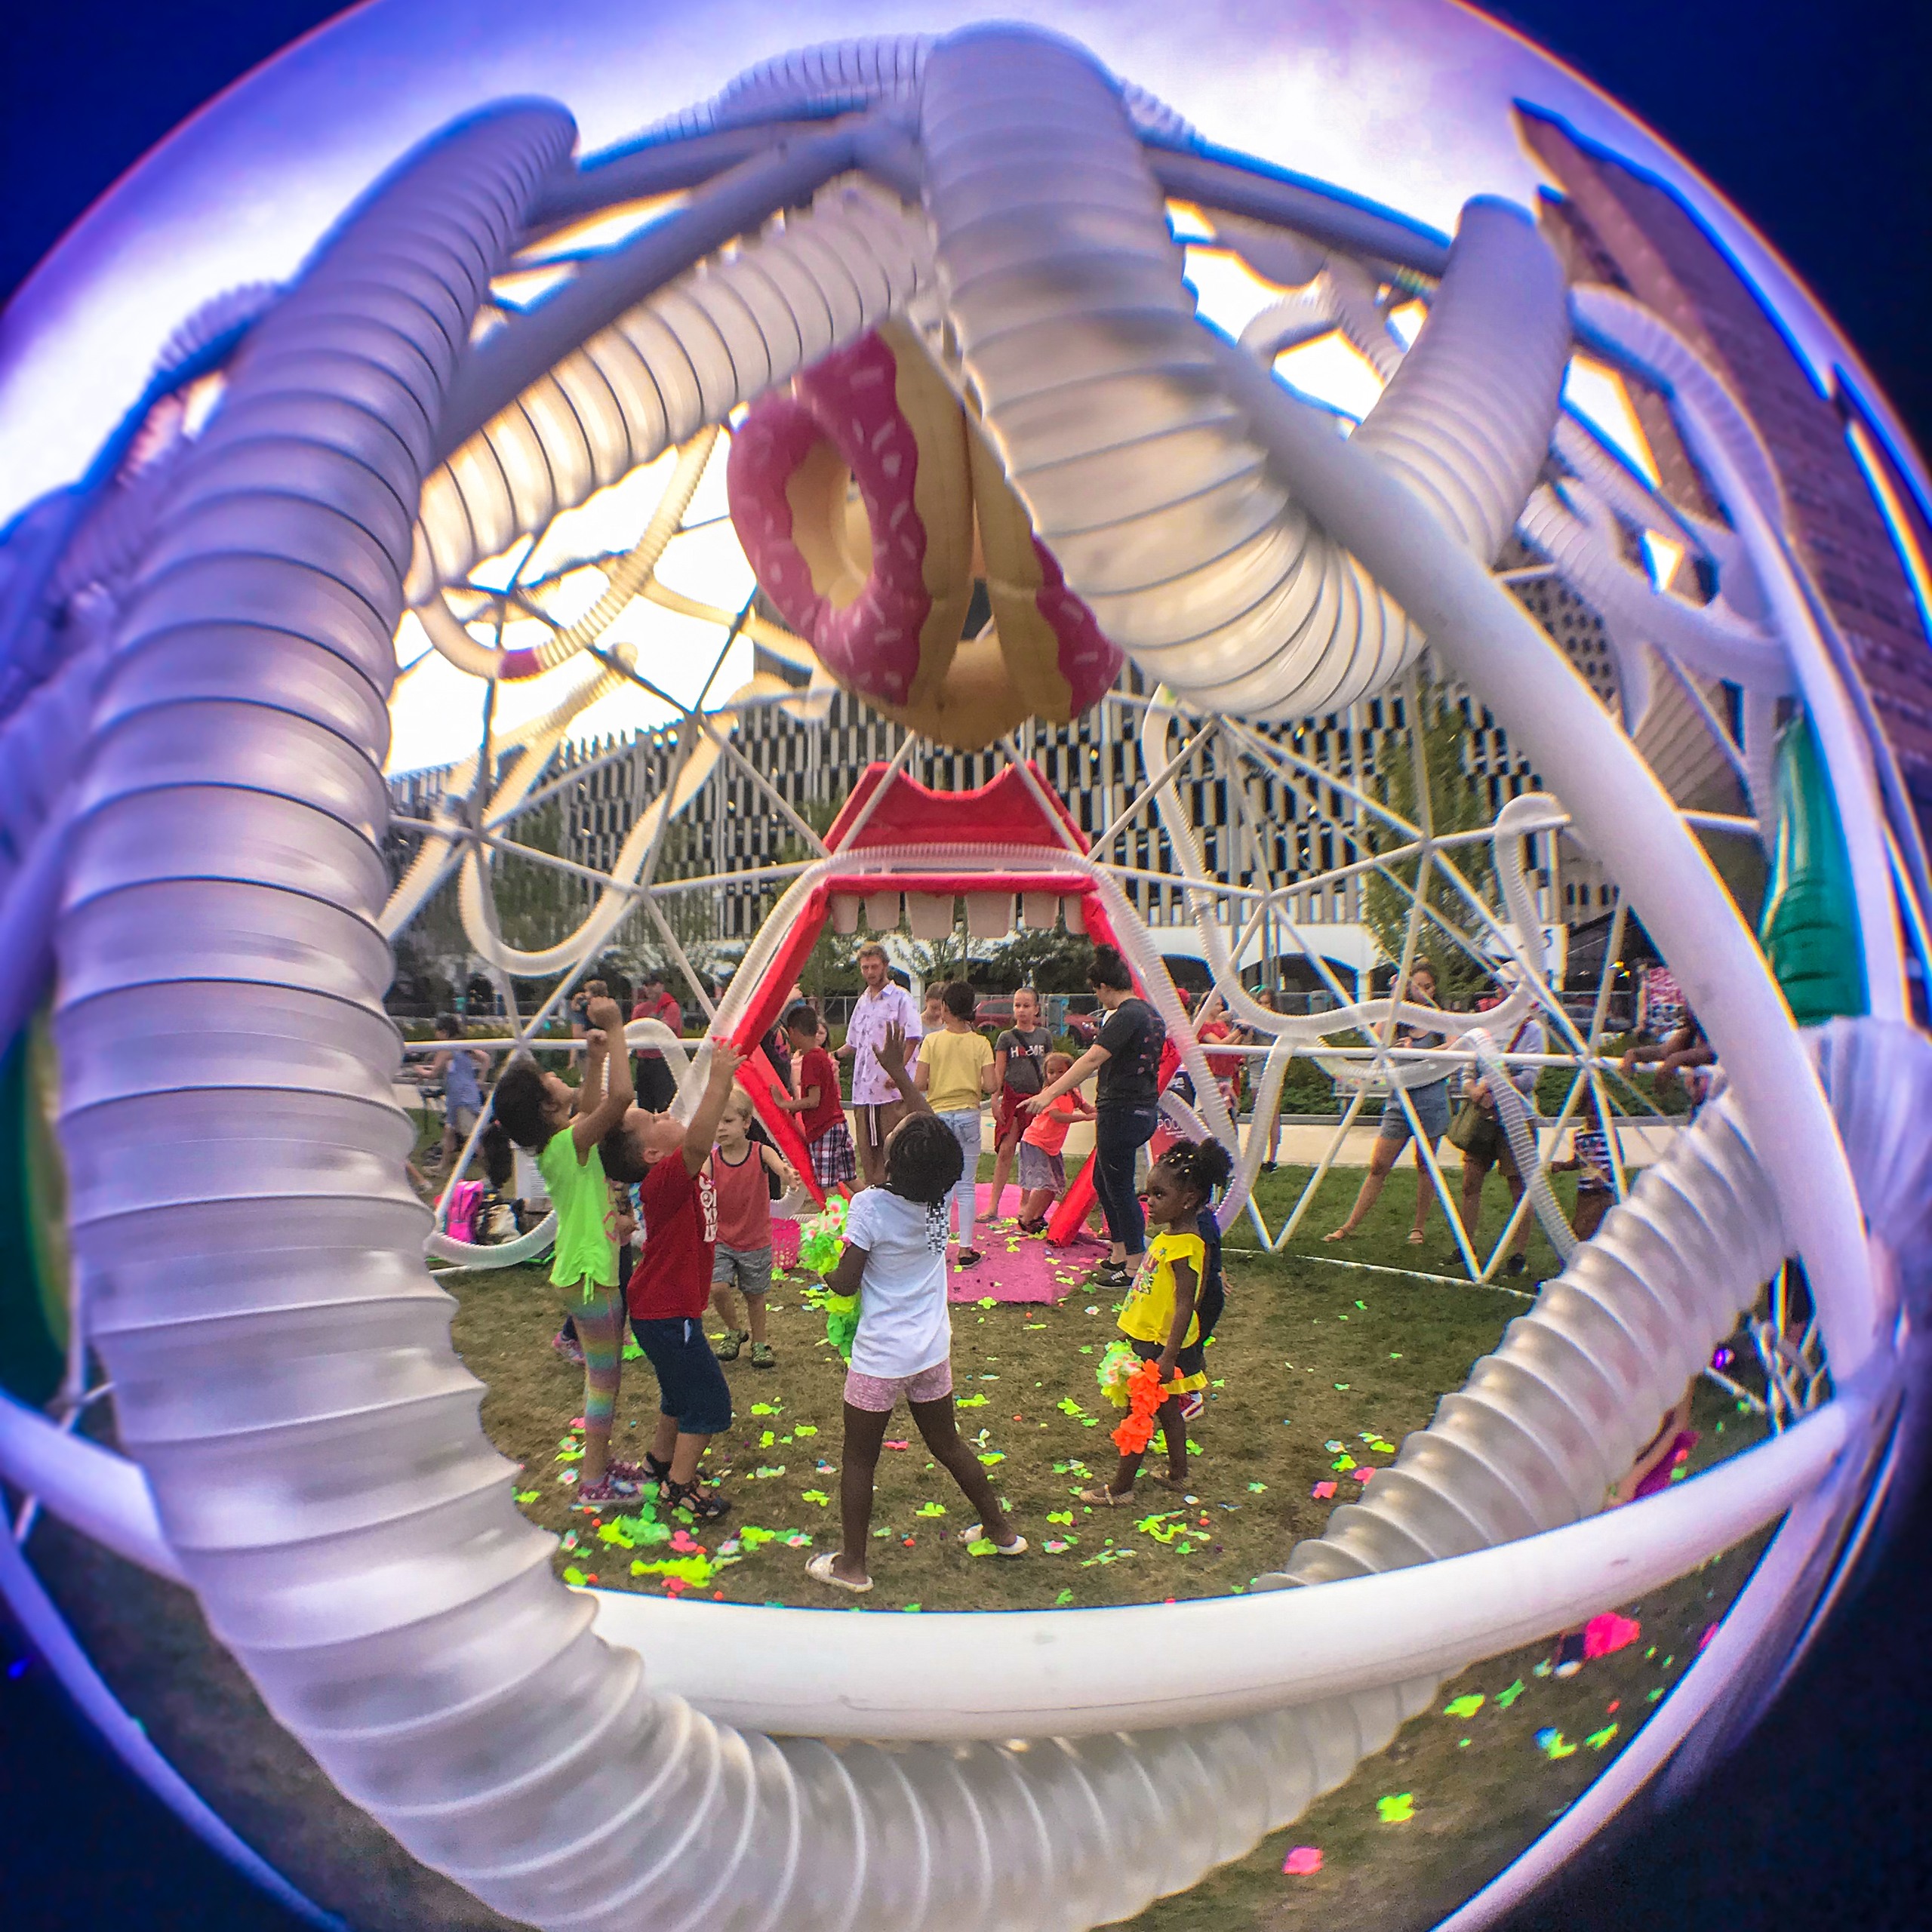 Children play in a large modern art sculpture